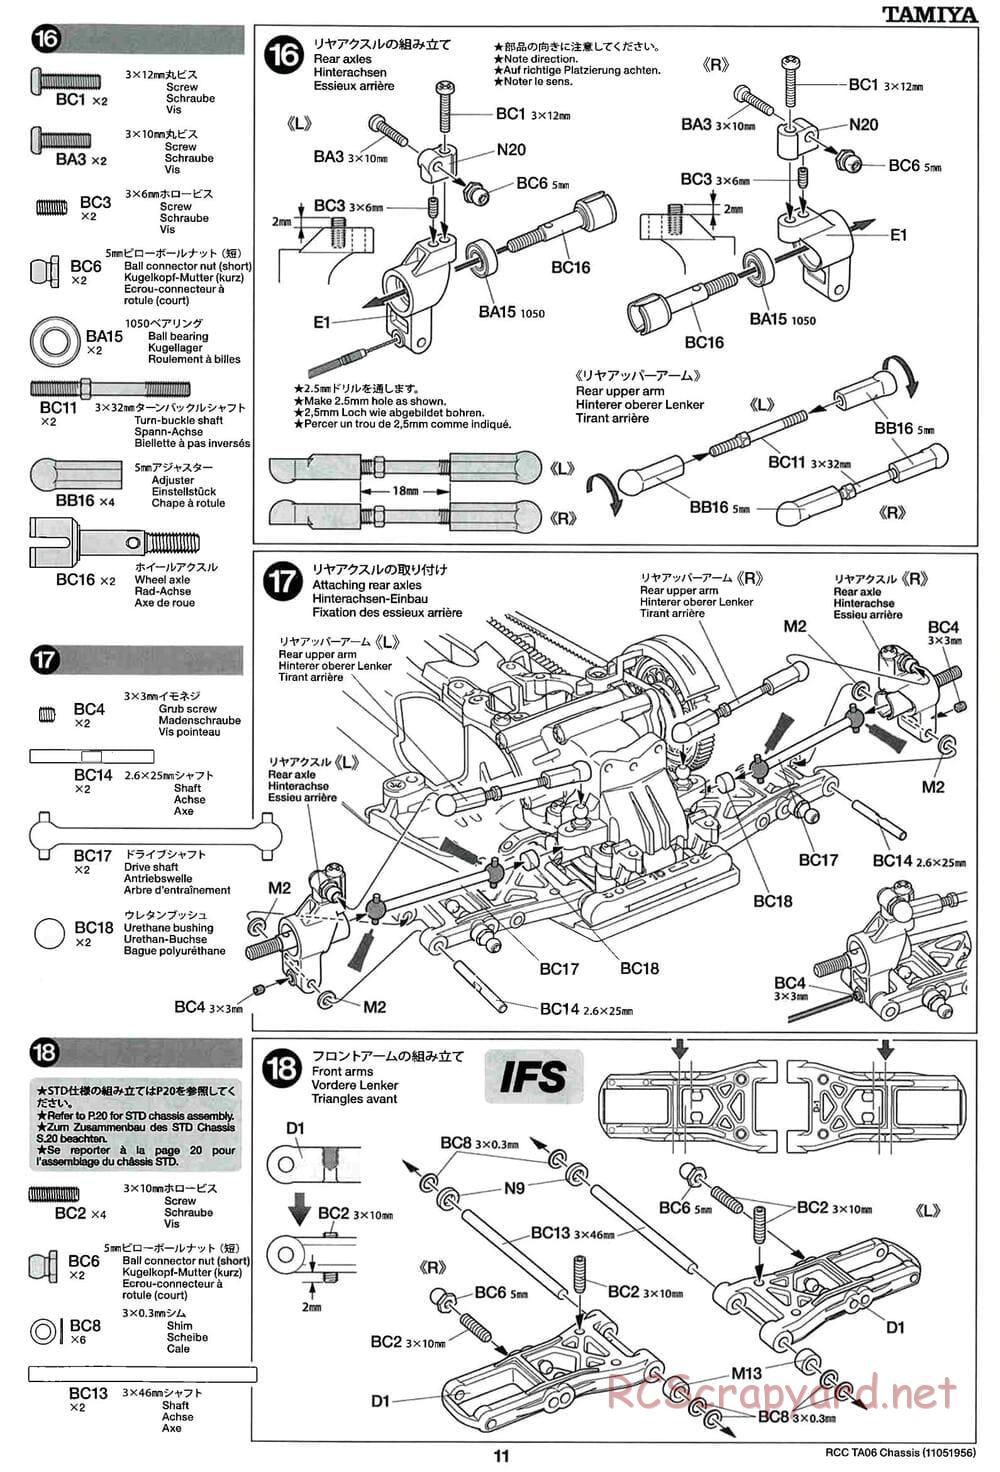 Tamiya - TA06 Chassis - Manual - Page 11